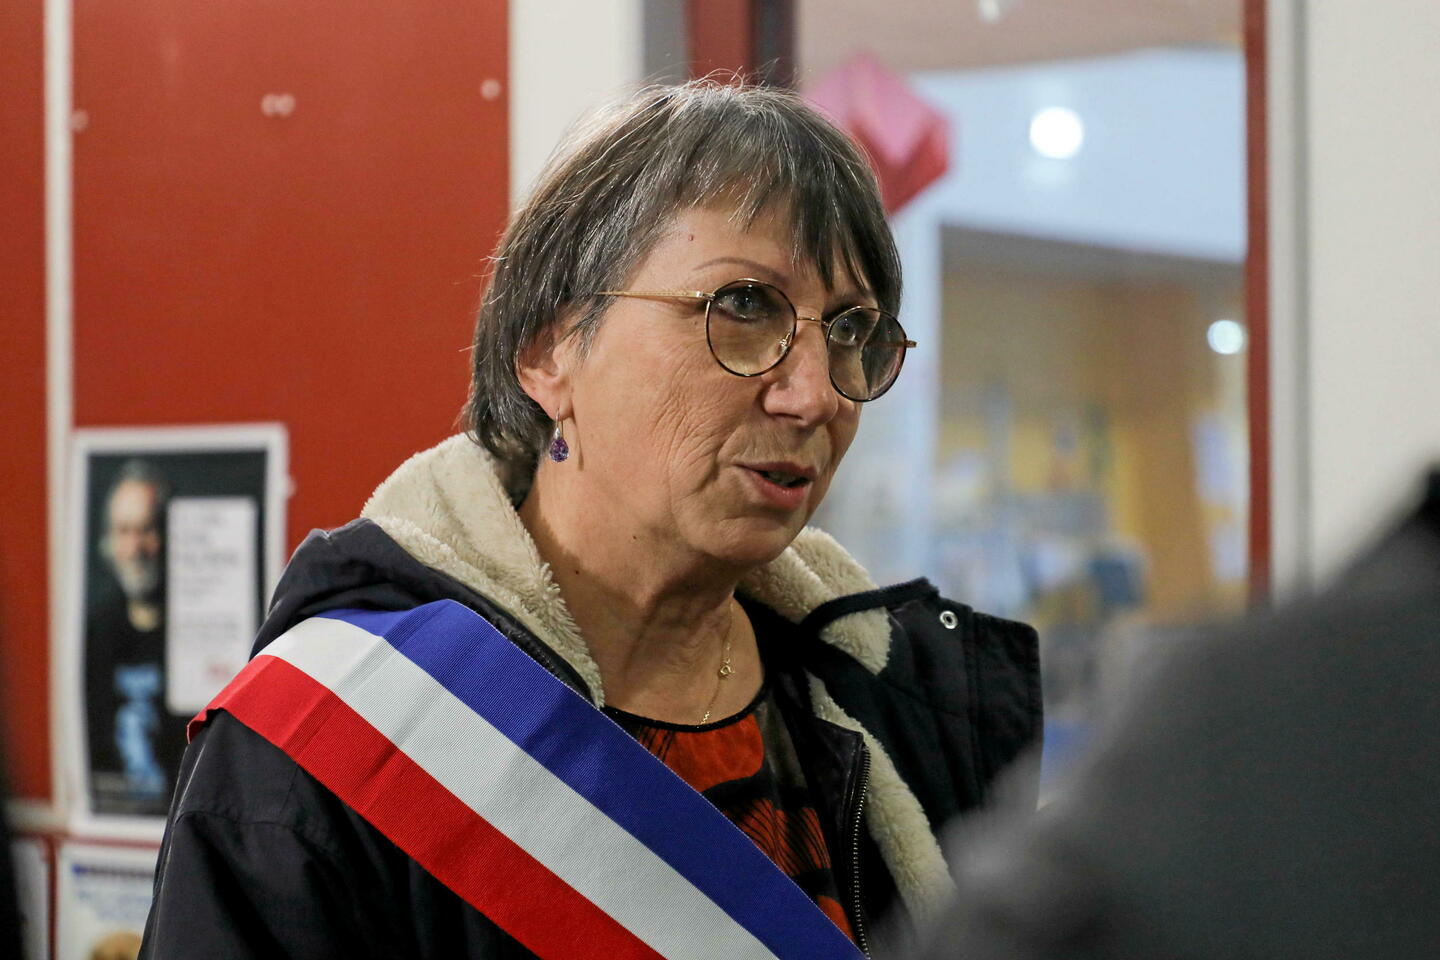 Actus françaises: La maire de Besançon harcelée après s’être opposée à des pancartes antimigrants  #France